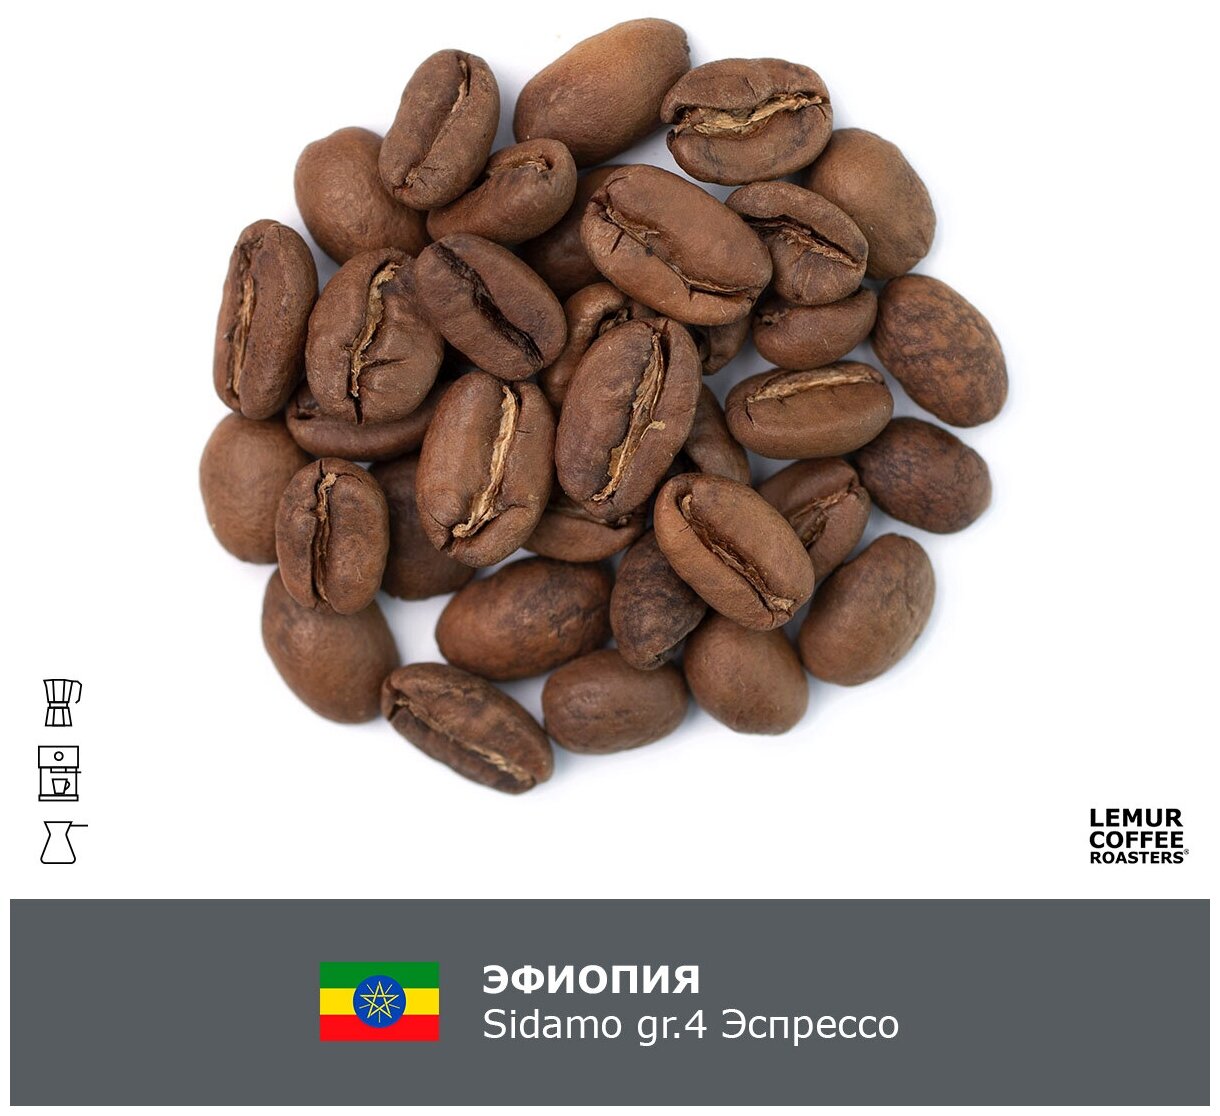 Свежеобжаренный кофе в зернах Эфиопия Sidamo gr.4 Эспрессо Lemur Coffee Roasters, 1кг